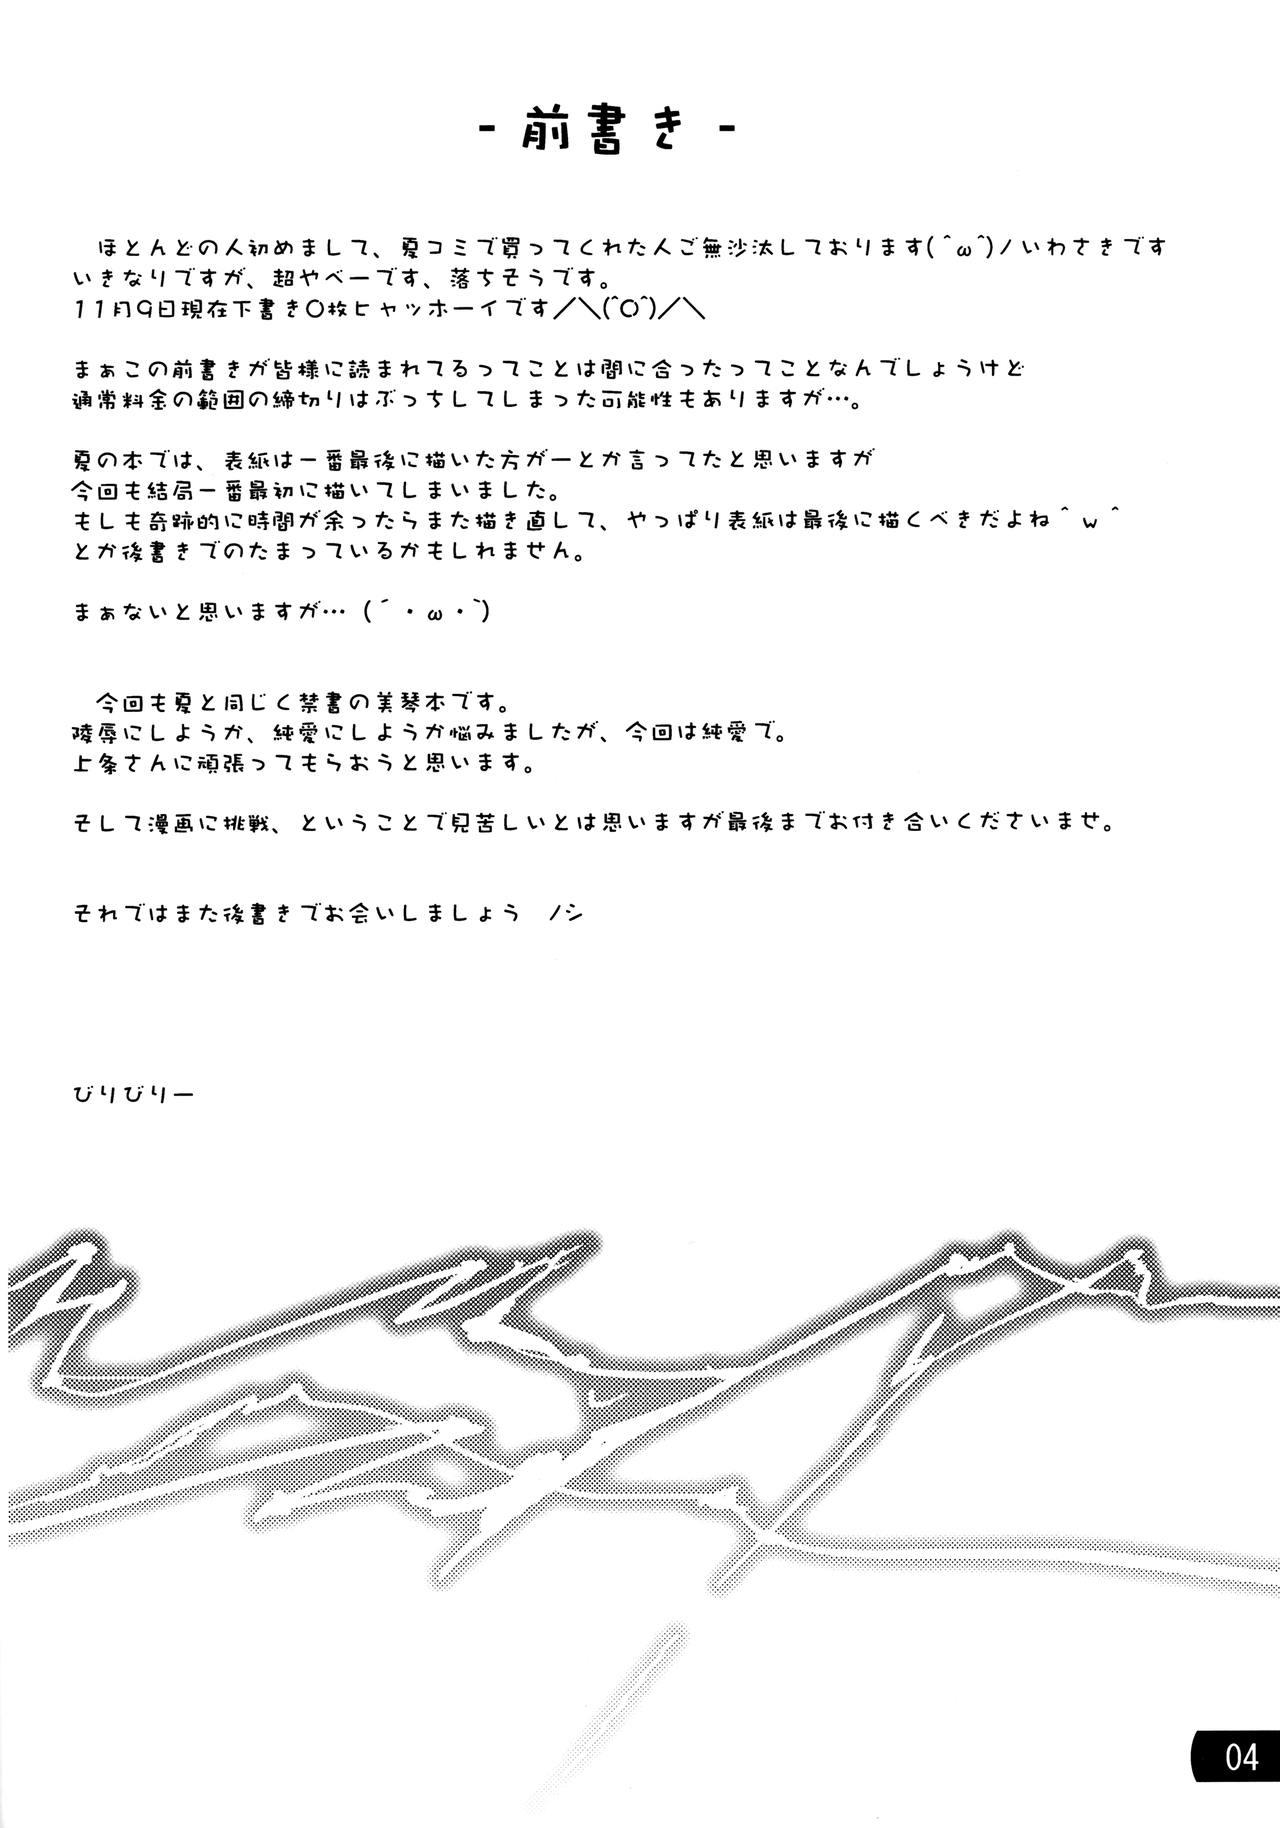 Petera Toaru mousou no chou denji hon 02 - Toaru kagaku no railgun Hardfuck - Page 3